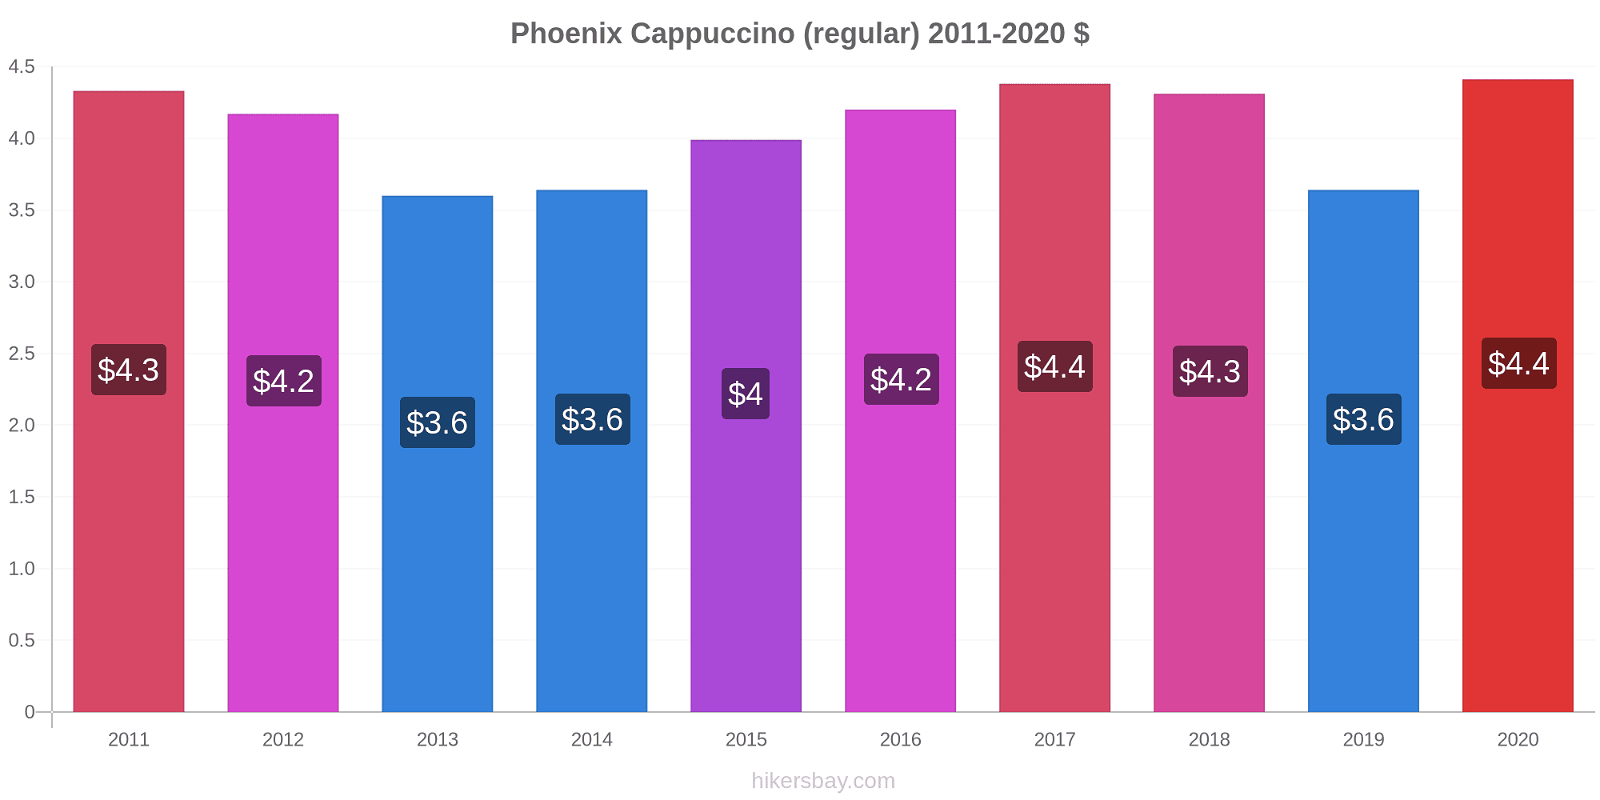 Phoenix price changes Cappuccino (regular) hikersbay.com